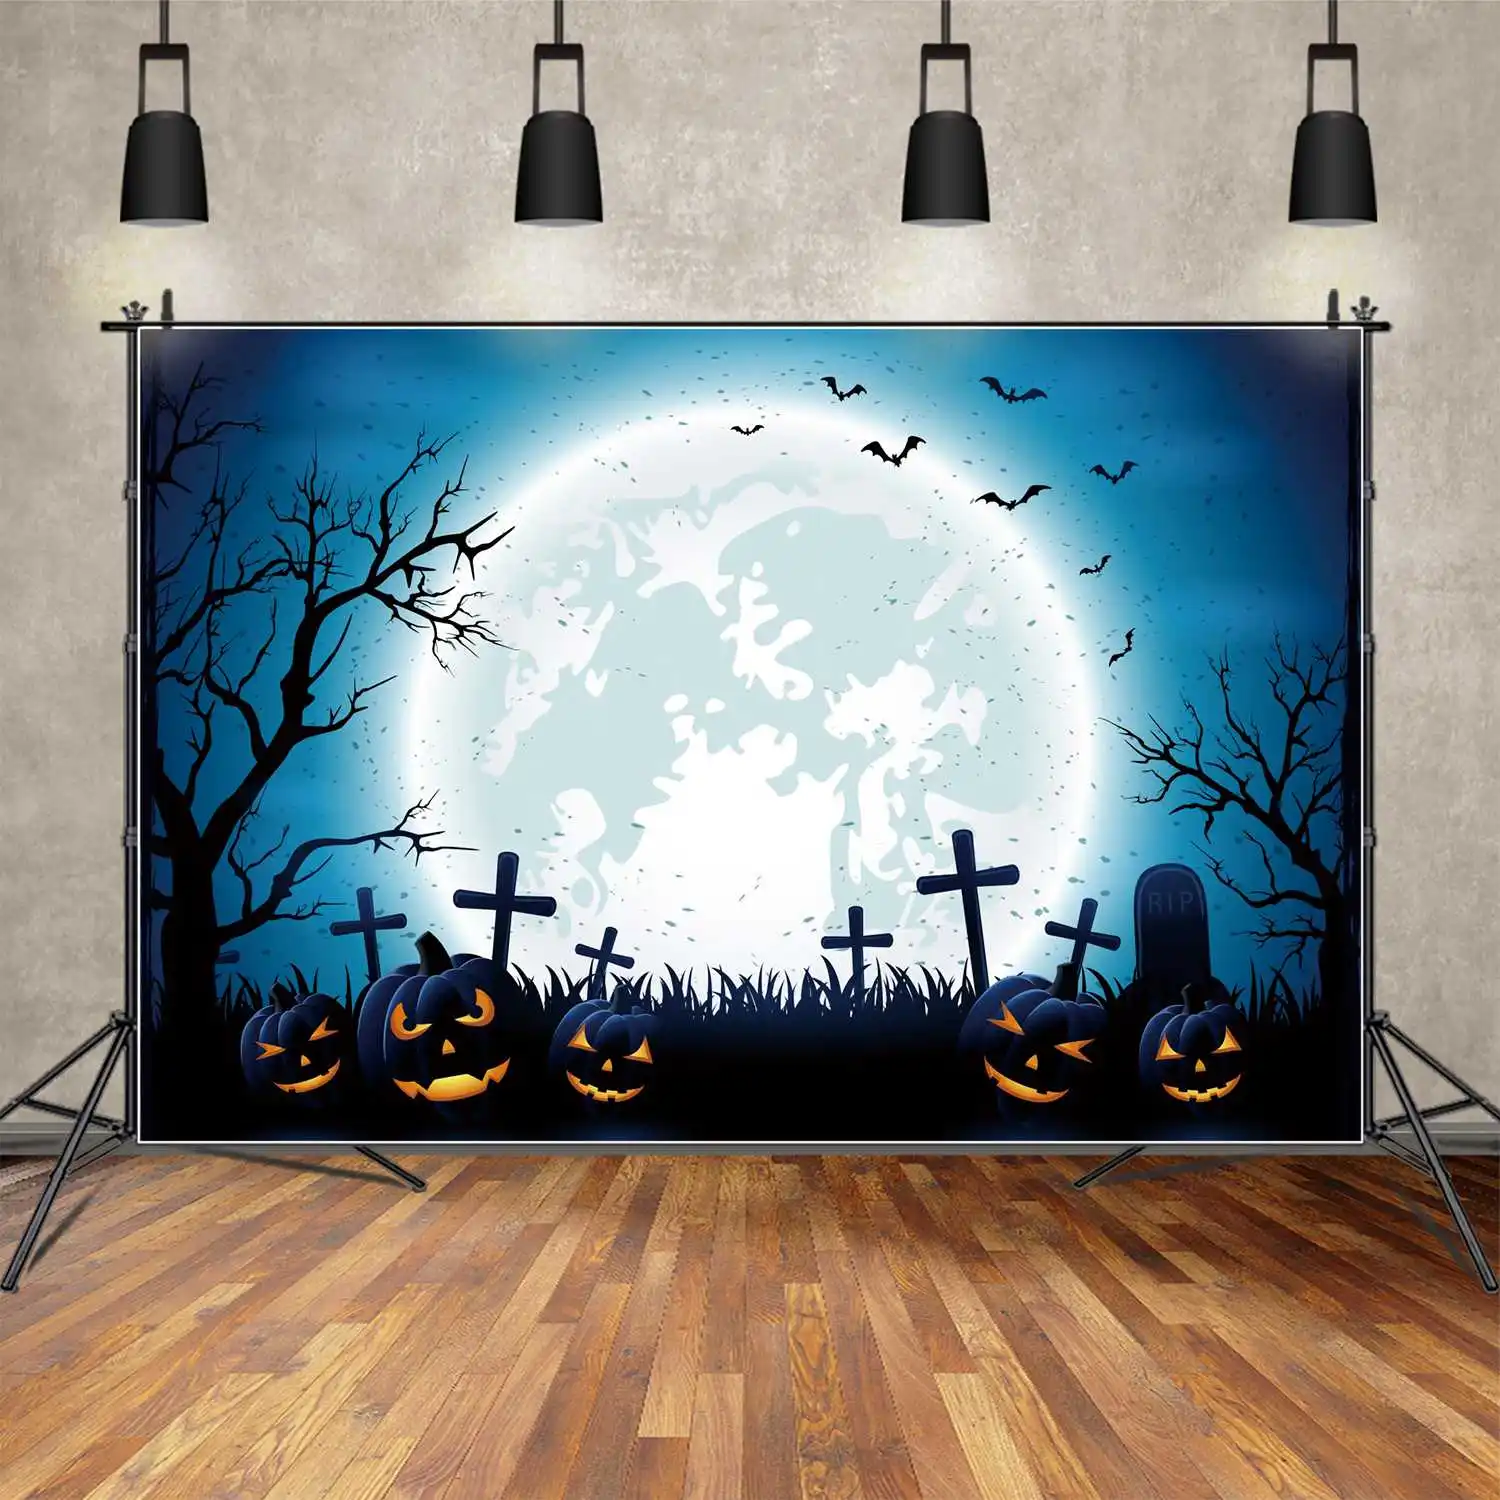 

Задний фон MOON.QG для Хэллоуина, голубая, белая луна, искусственная стена, реквизит, фон, надгробие, трава, дерево, тени, тыква, фонарь, фотобудка